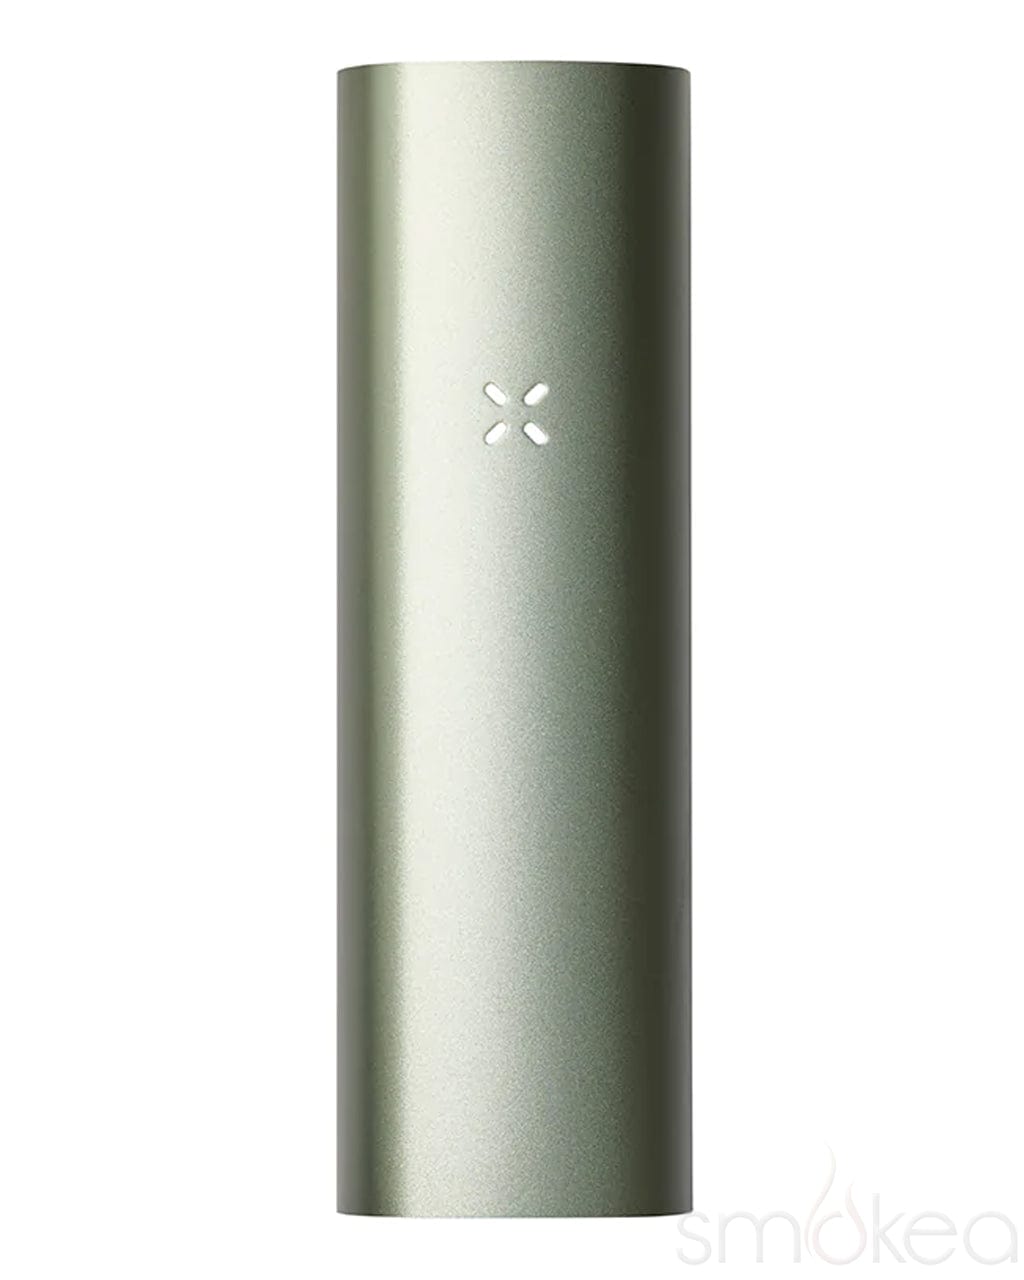 Pax 3 Full Kit Dry Herb Vaporizer – Smoke Station